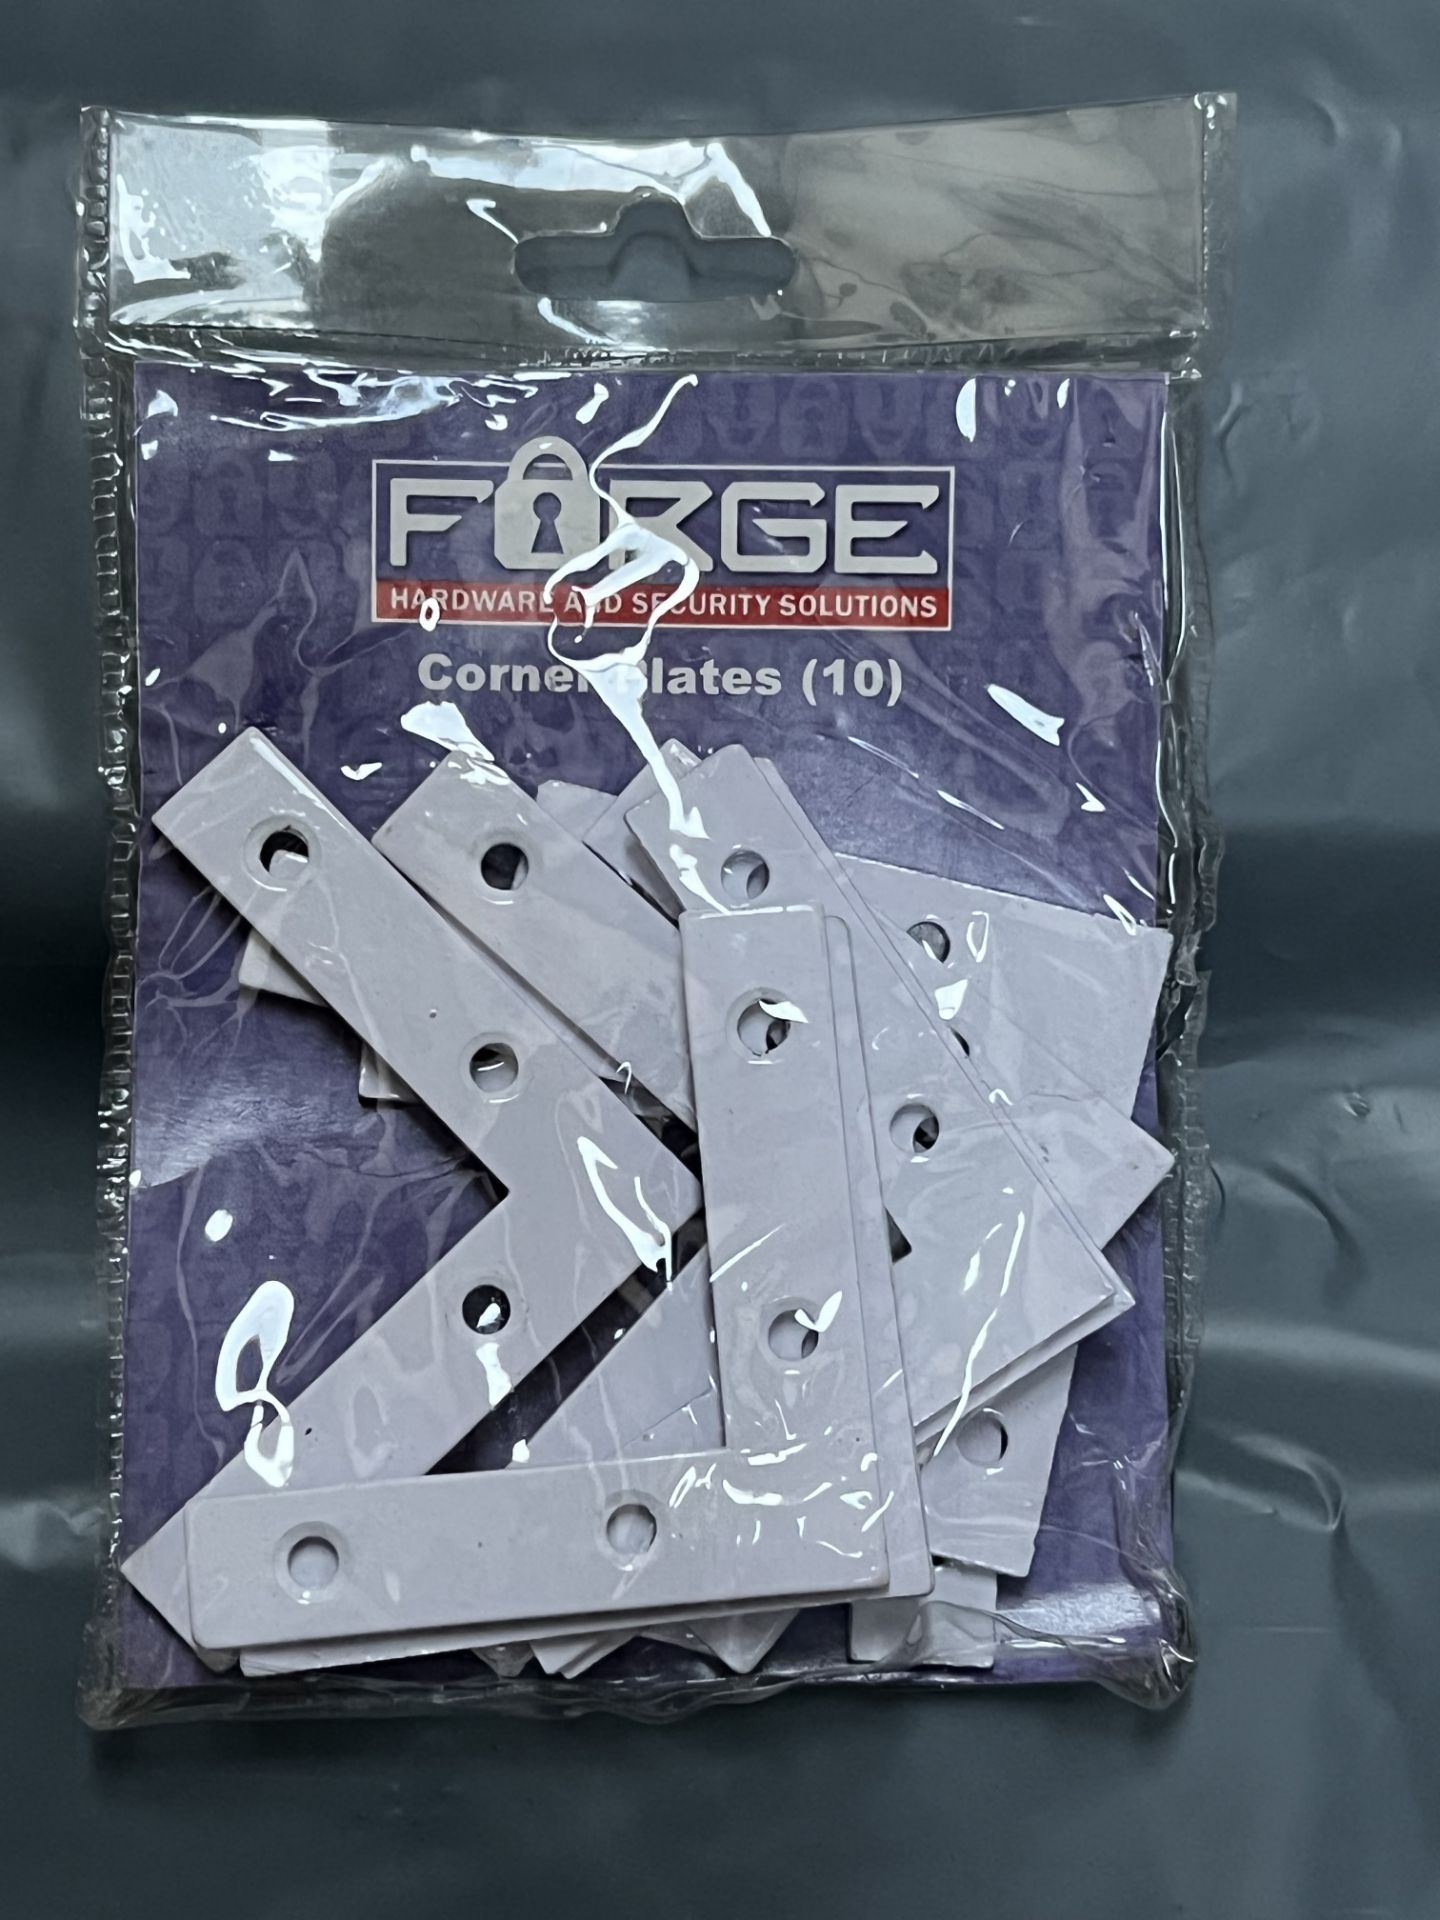 10 Packs of 10 Forge 75mm Corner Plates / Braces (White) FGEBRACPL25W RRP £2.99 per pack